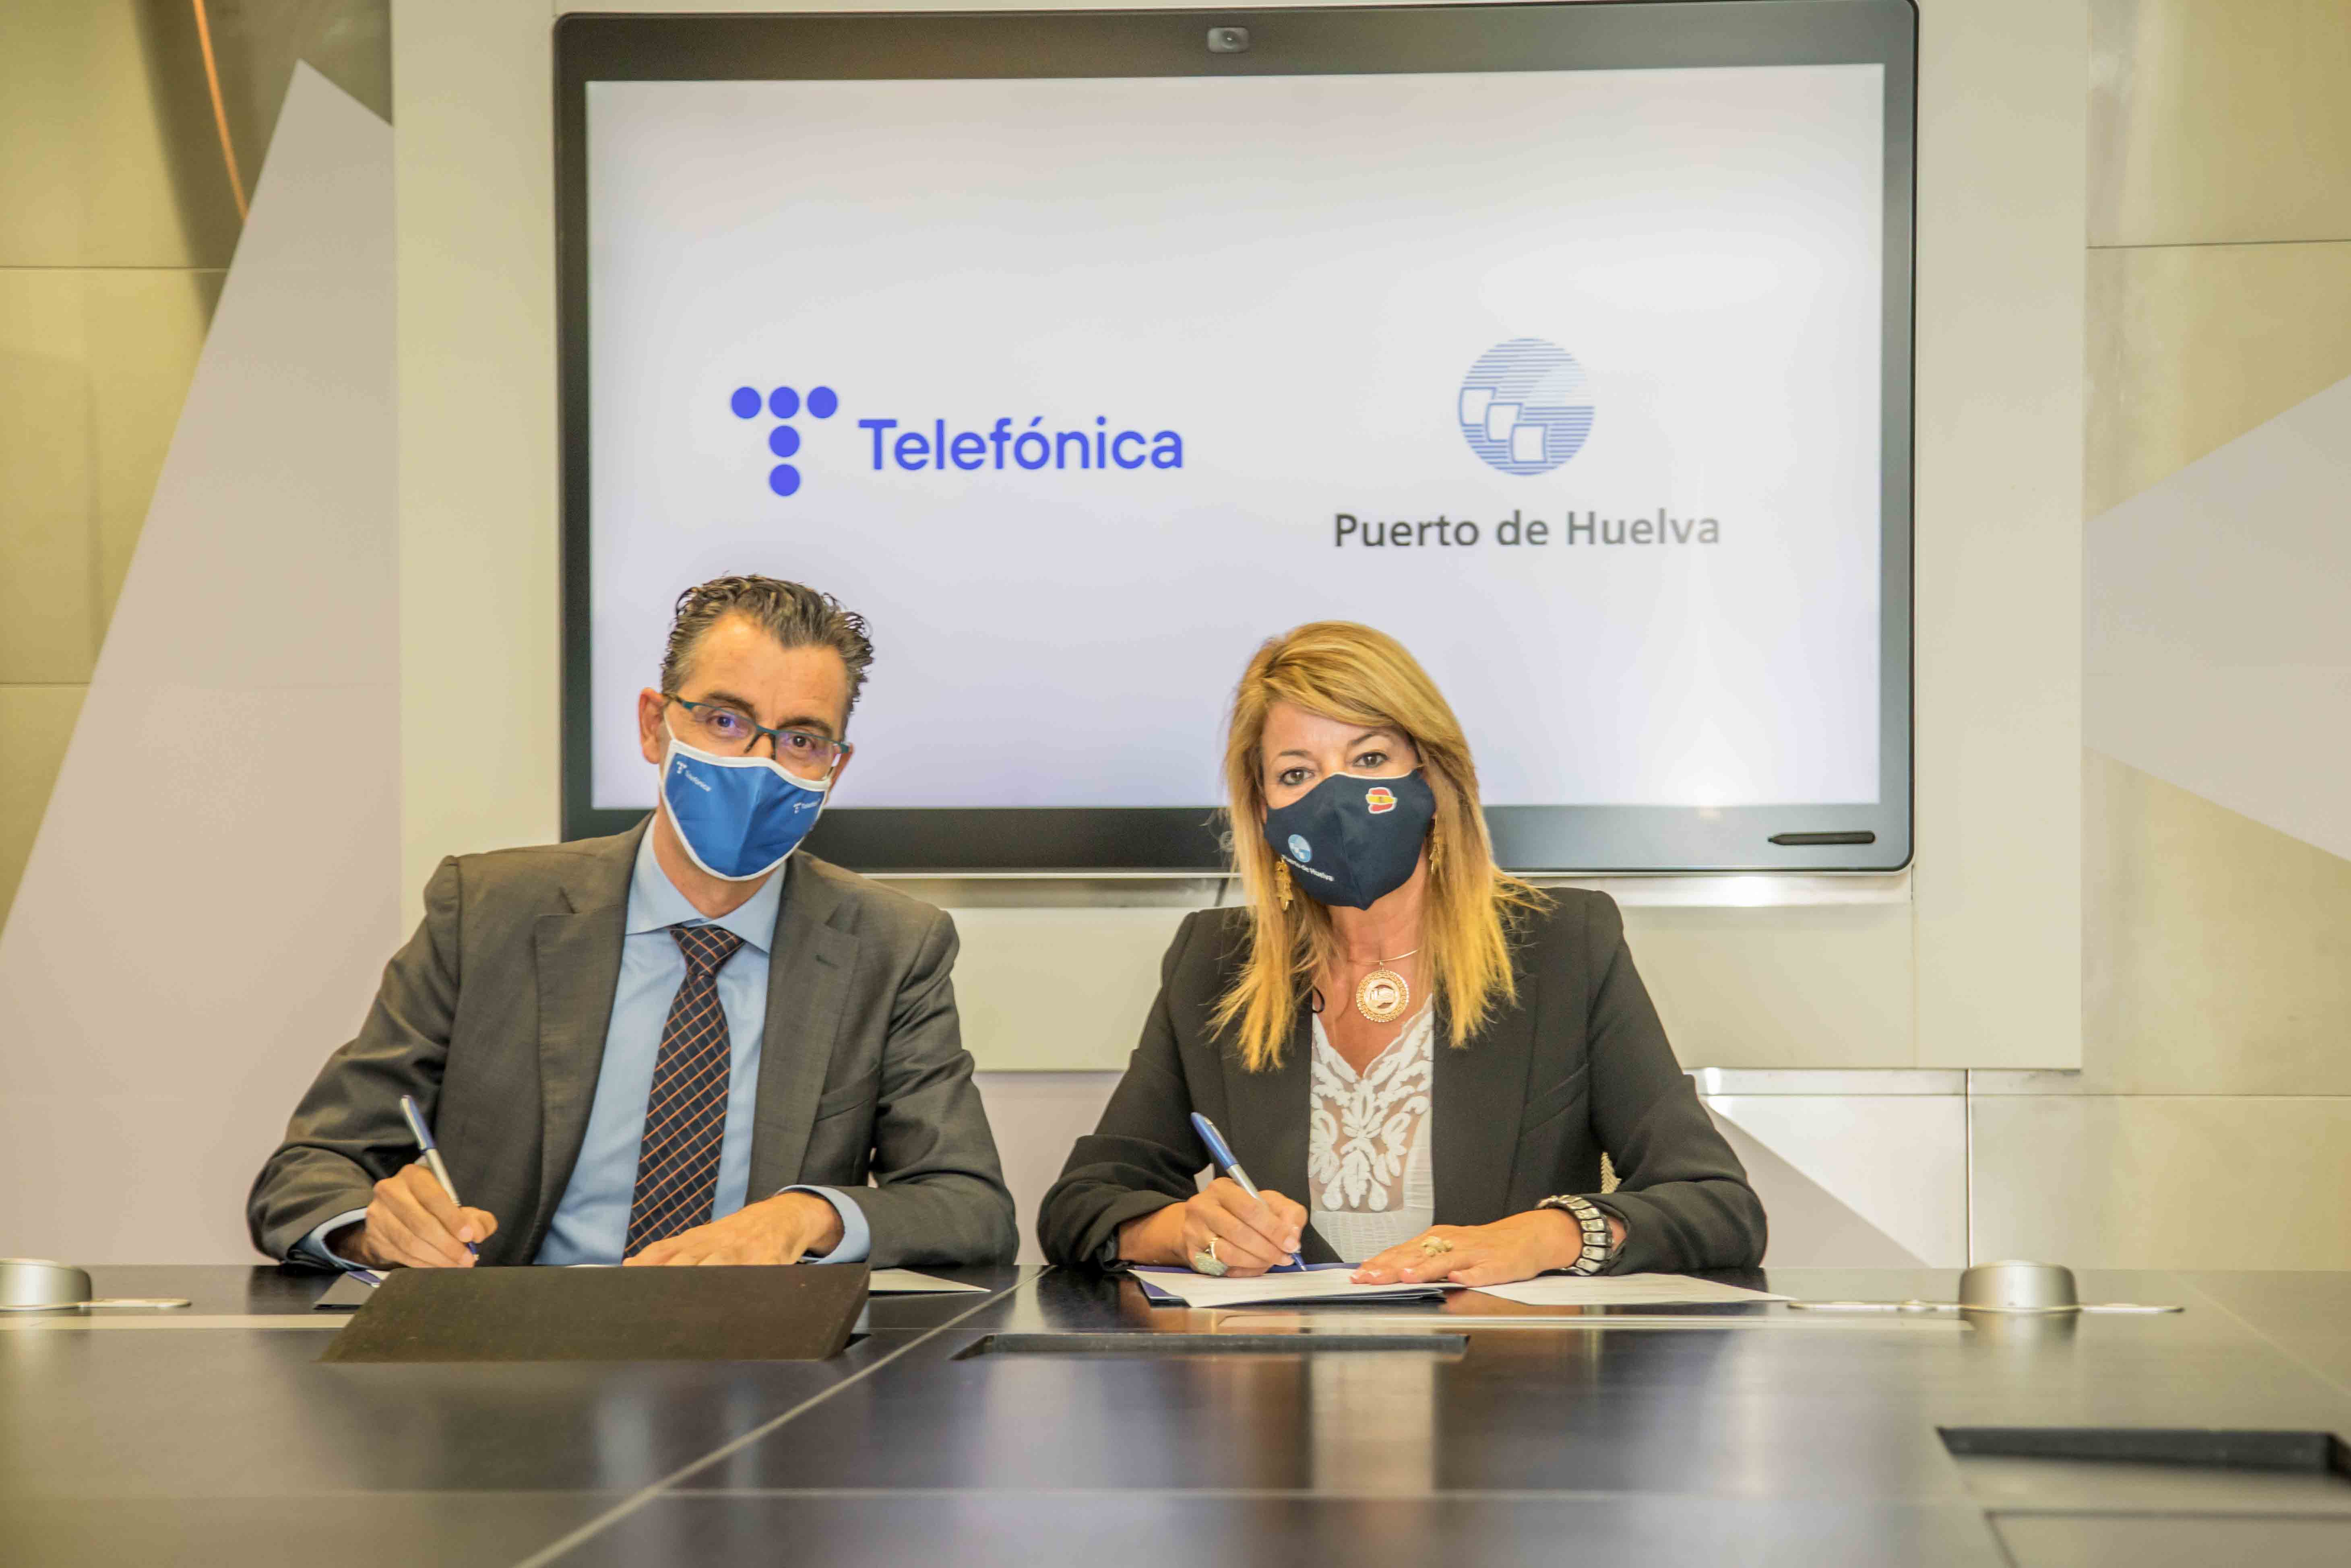 Joaquín Segovia, director del Territorio Sur de Telefónica España, y Pilar Miranda, presidenta del puerto de Huelva, firmando el contrato para la gestión del nodo de innovación tecnológica del Puerto de Huelva